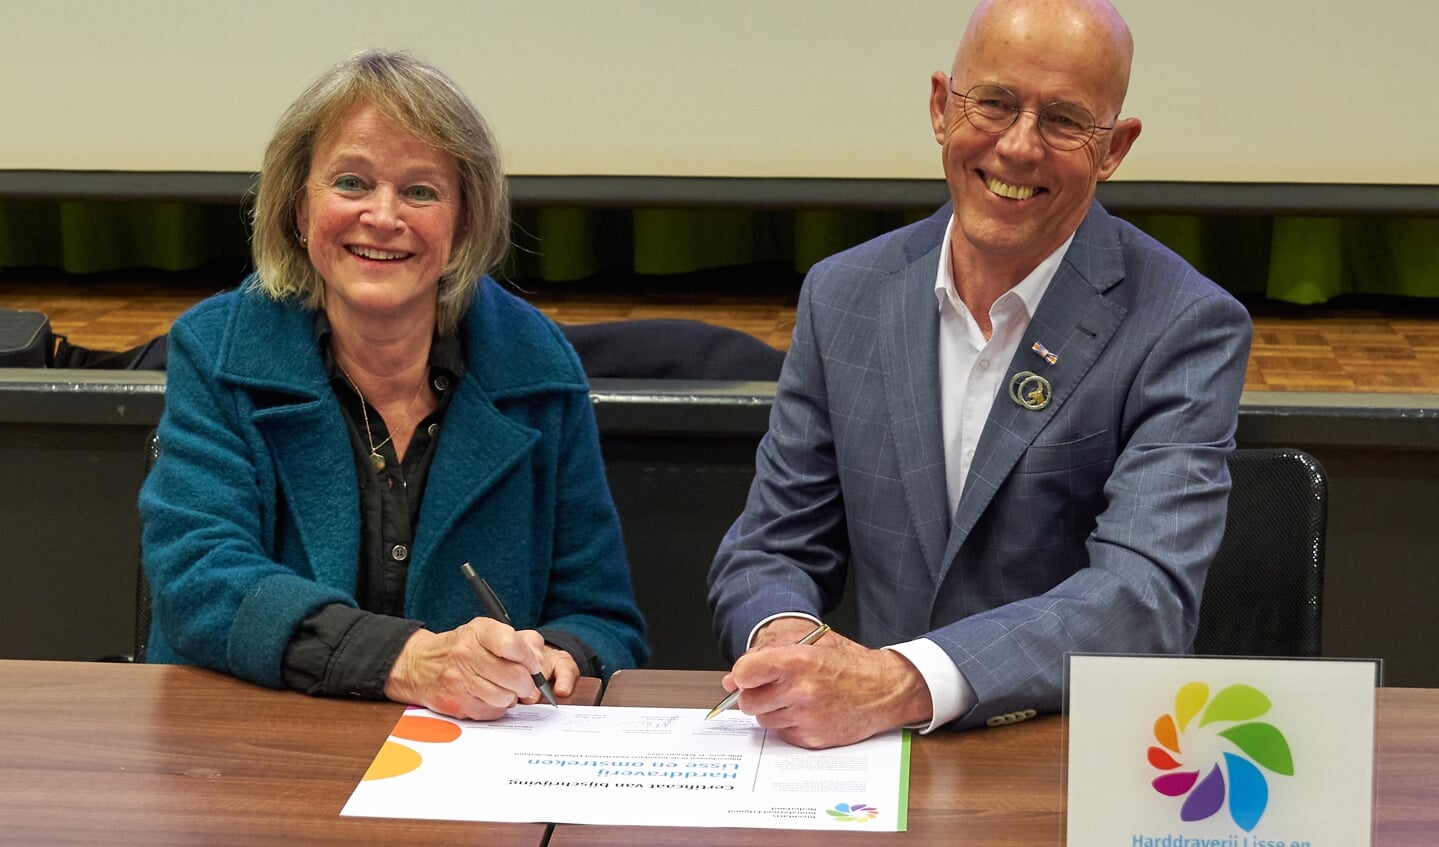 Burgemeester Lies Spruit en Tom Rooijakkers ondertekenden het certificaat voor bijschrijven van de kortebaandraverij op de lijst Immaterieel Erfgoed.